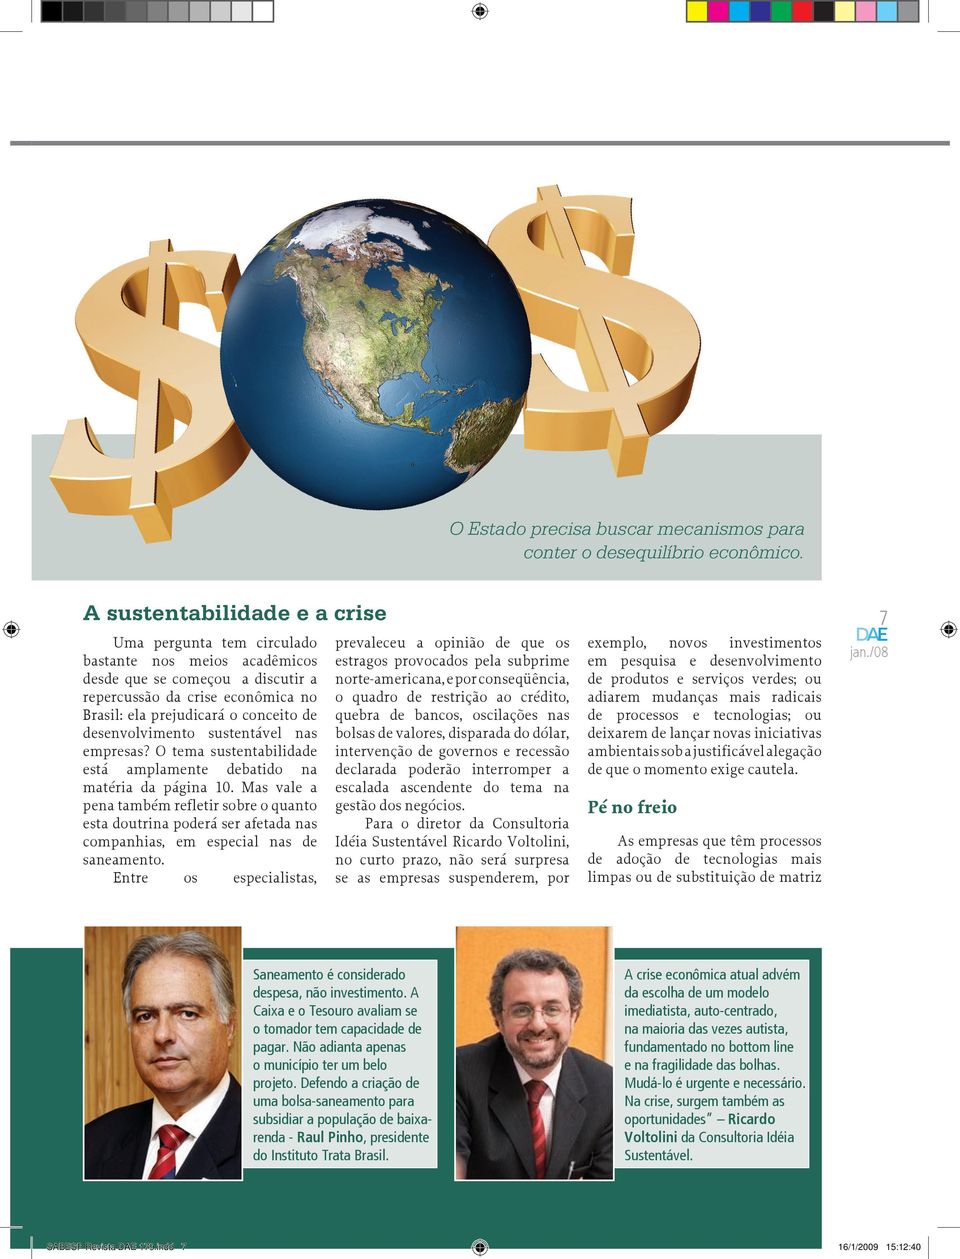 desenvolvimento sustentável nas empresas? O tema sustentabilidade está amplamente debatido na matéria da página 10.